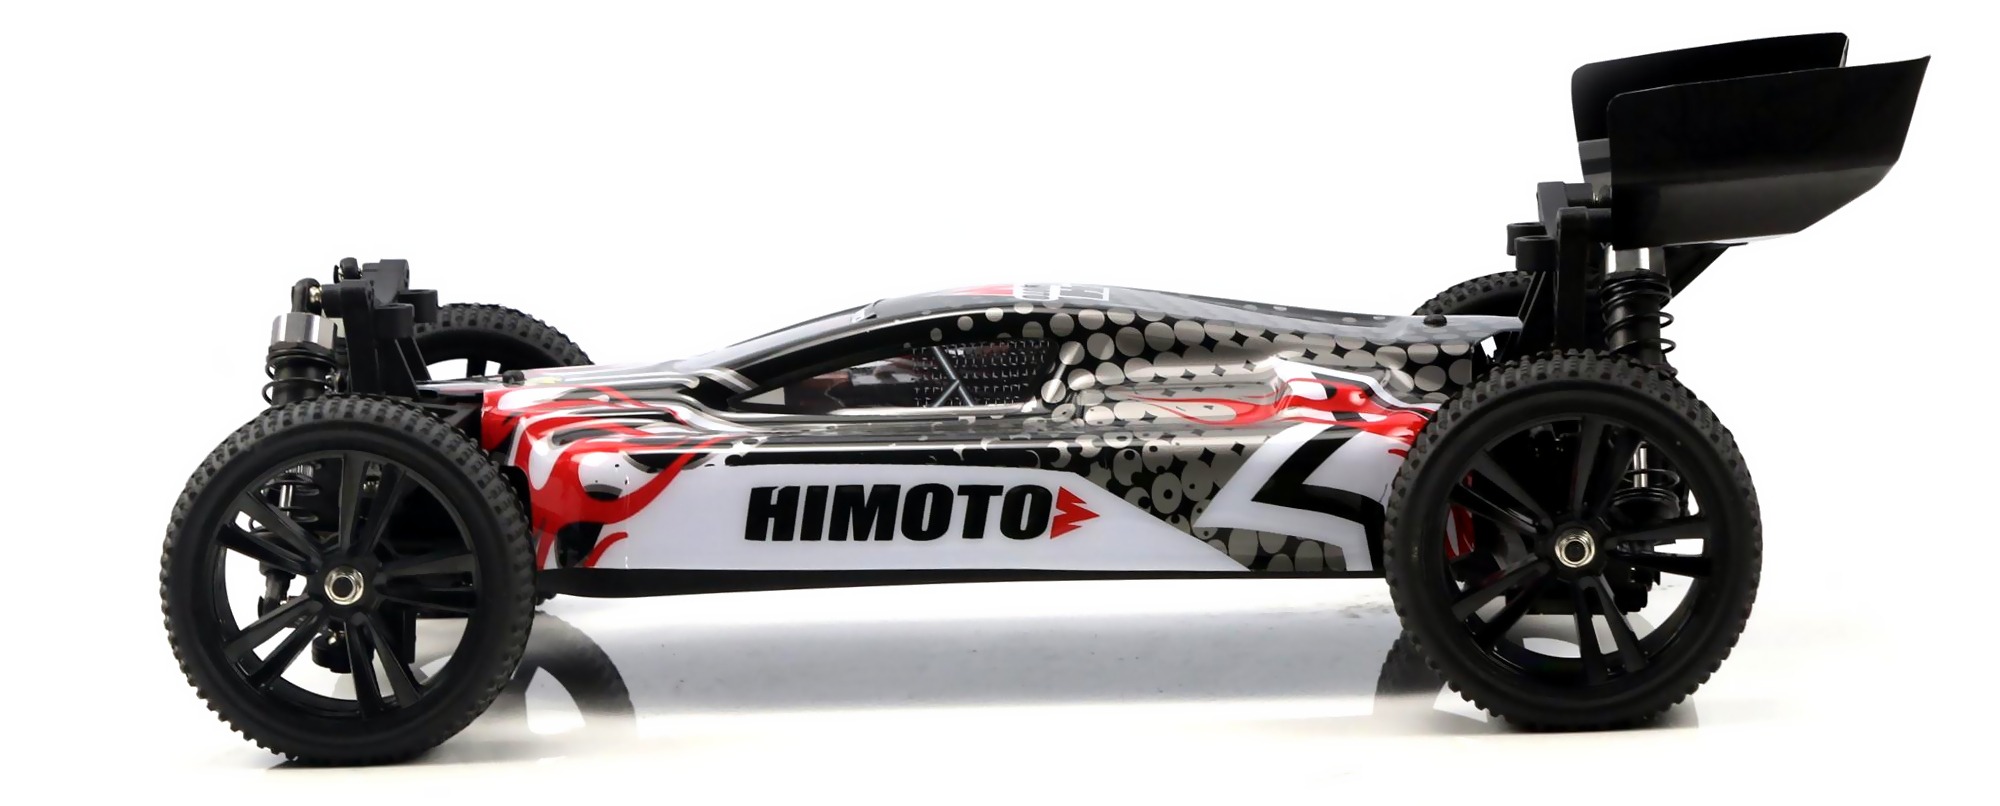 Co to jest Himoto - Elektryczny samochód RC firmy Himoto